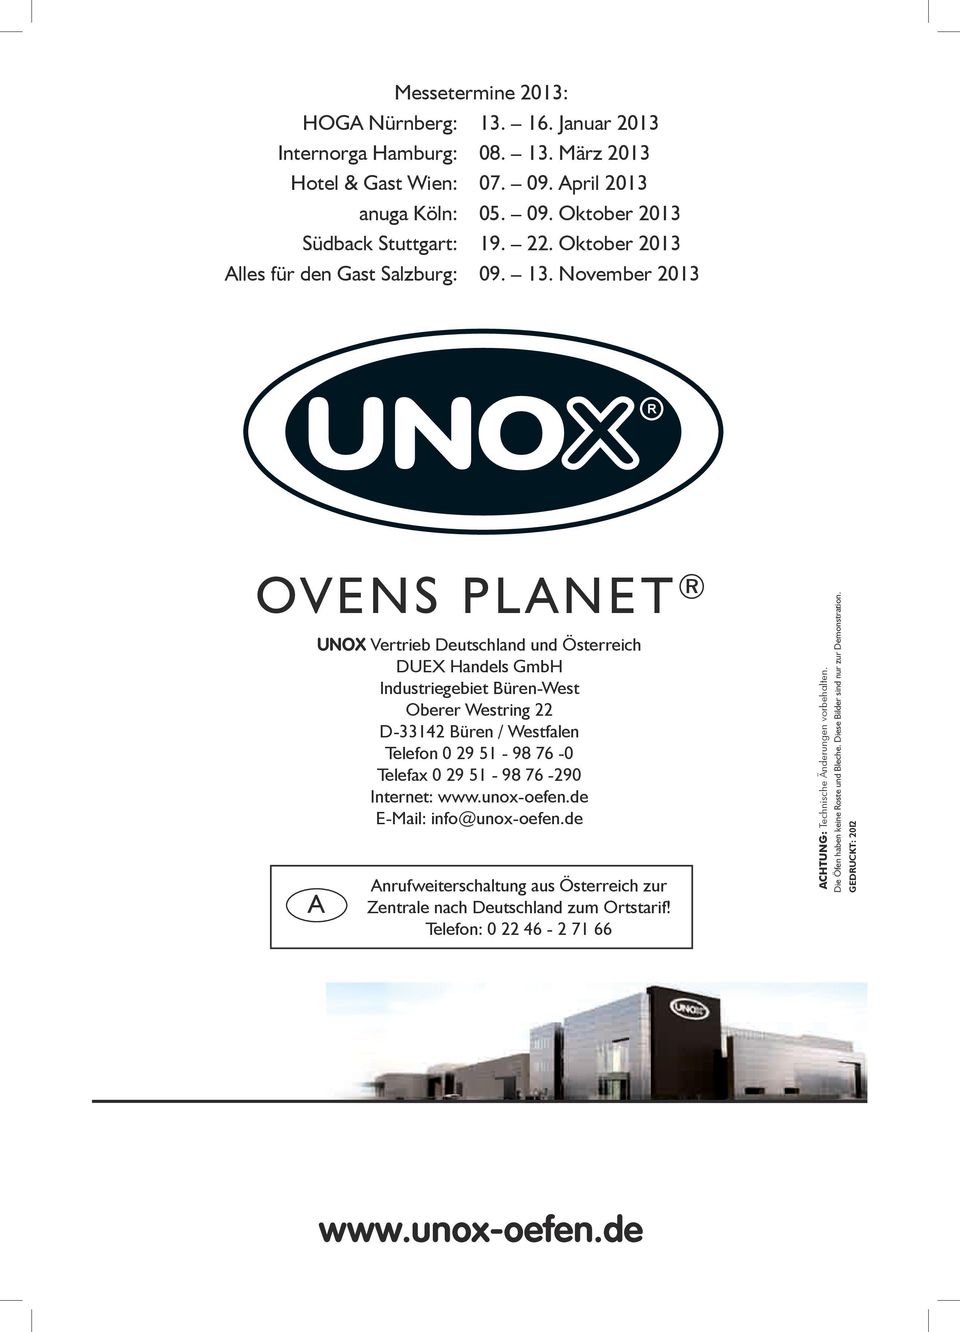 November 2013 OVENS PLANET A UNOX Vertrieb Deutschland und Österreich DUEX Handels GmbH Industriegebiet Büren-West Oberer Westring 22 D-33142 Büren / Westfalen Telefon 0 29 51-98 76-0 Telefax